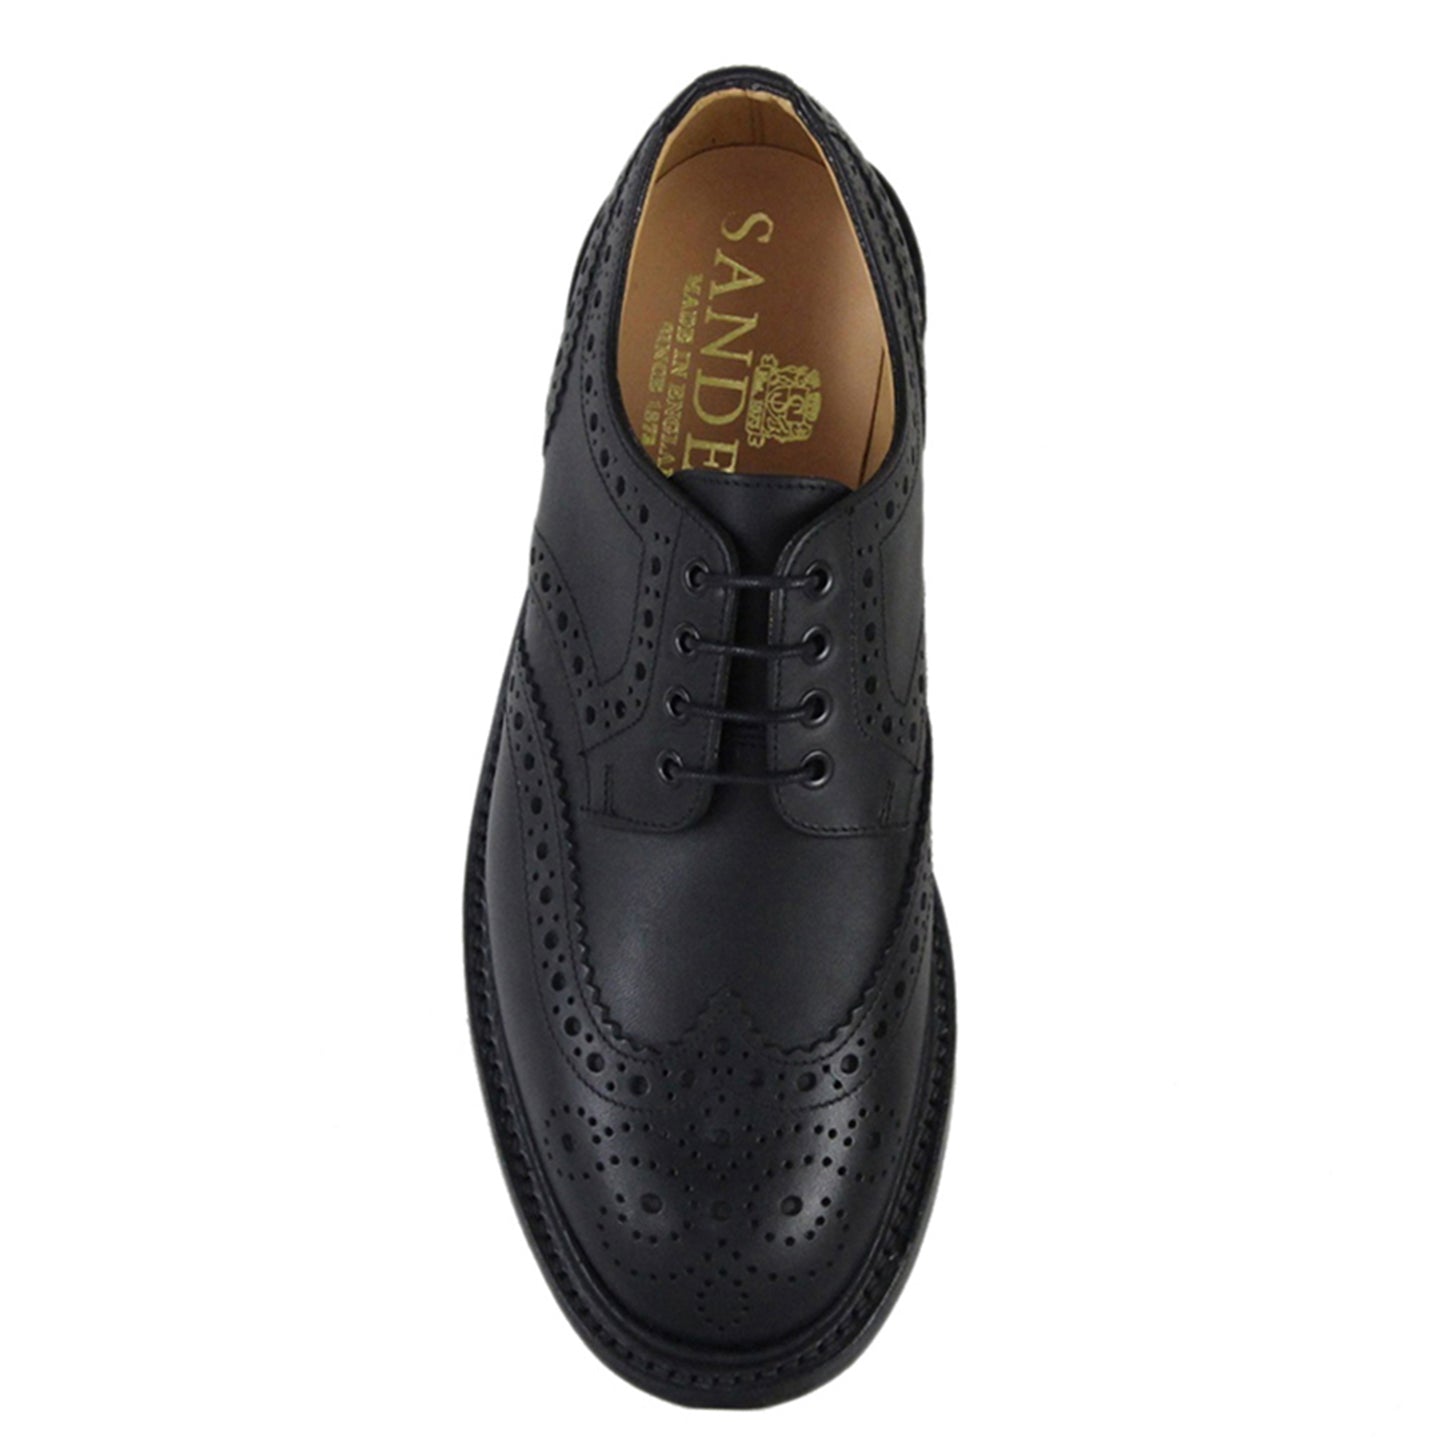 Sanders Salisbury Gibson Brogue Shoe Leather Footwear in Black Top